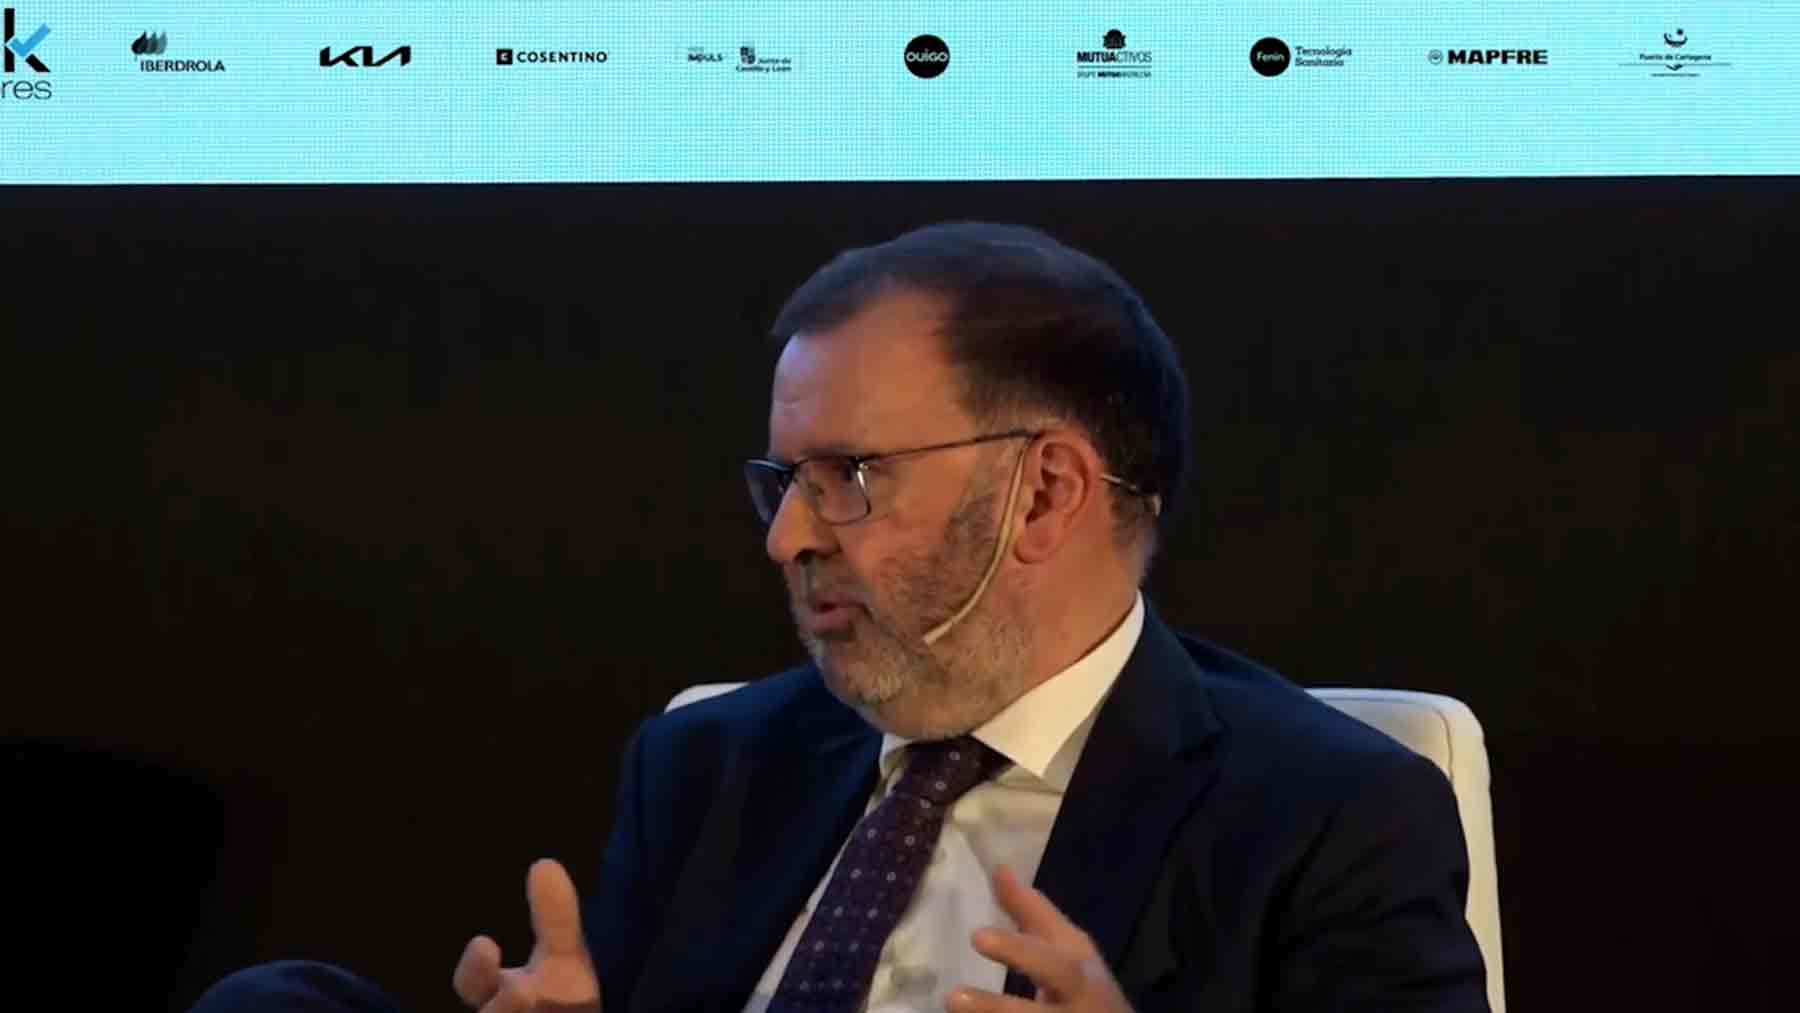 Cándido Pérez Serrano, socio Responsable de Infraestructuras, Transporte, Gobierno y Sanidad de KPMG en España